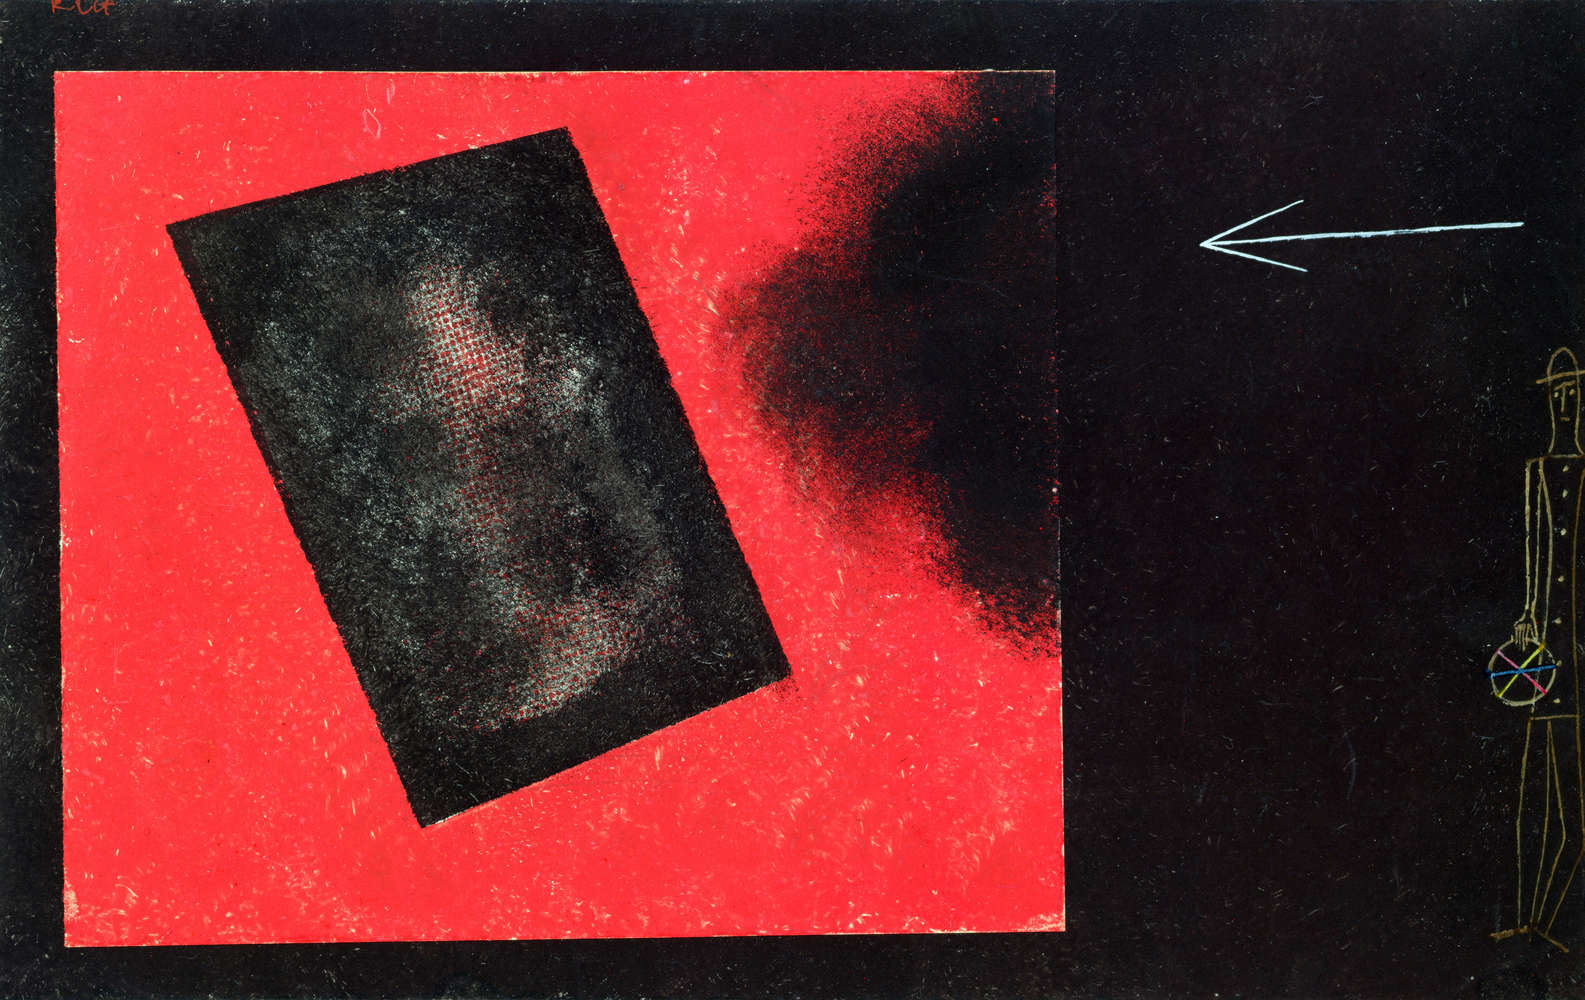             Fototapete "Neues Spiel beginnt" von Paul Klee
        